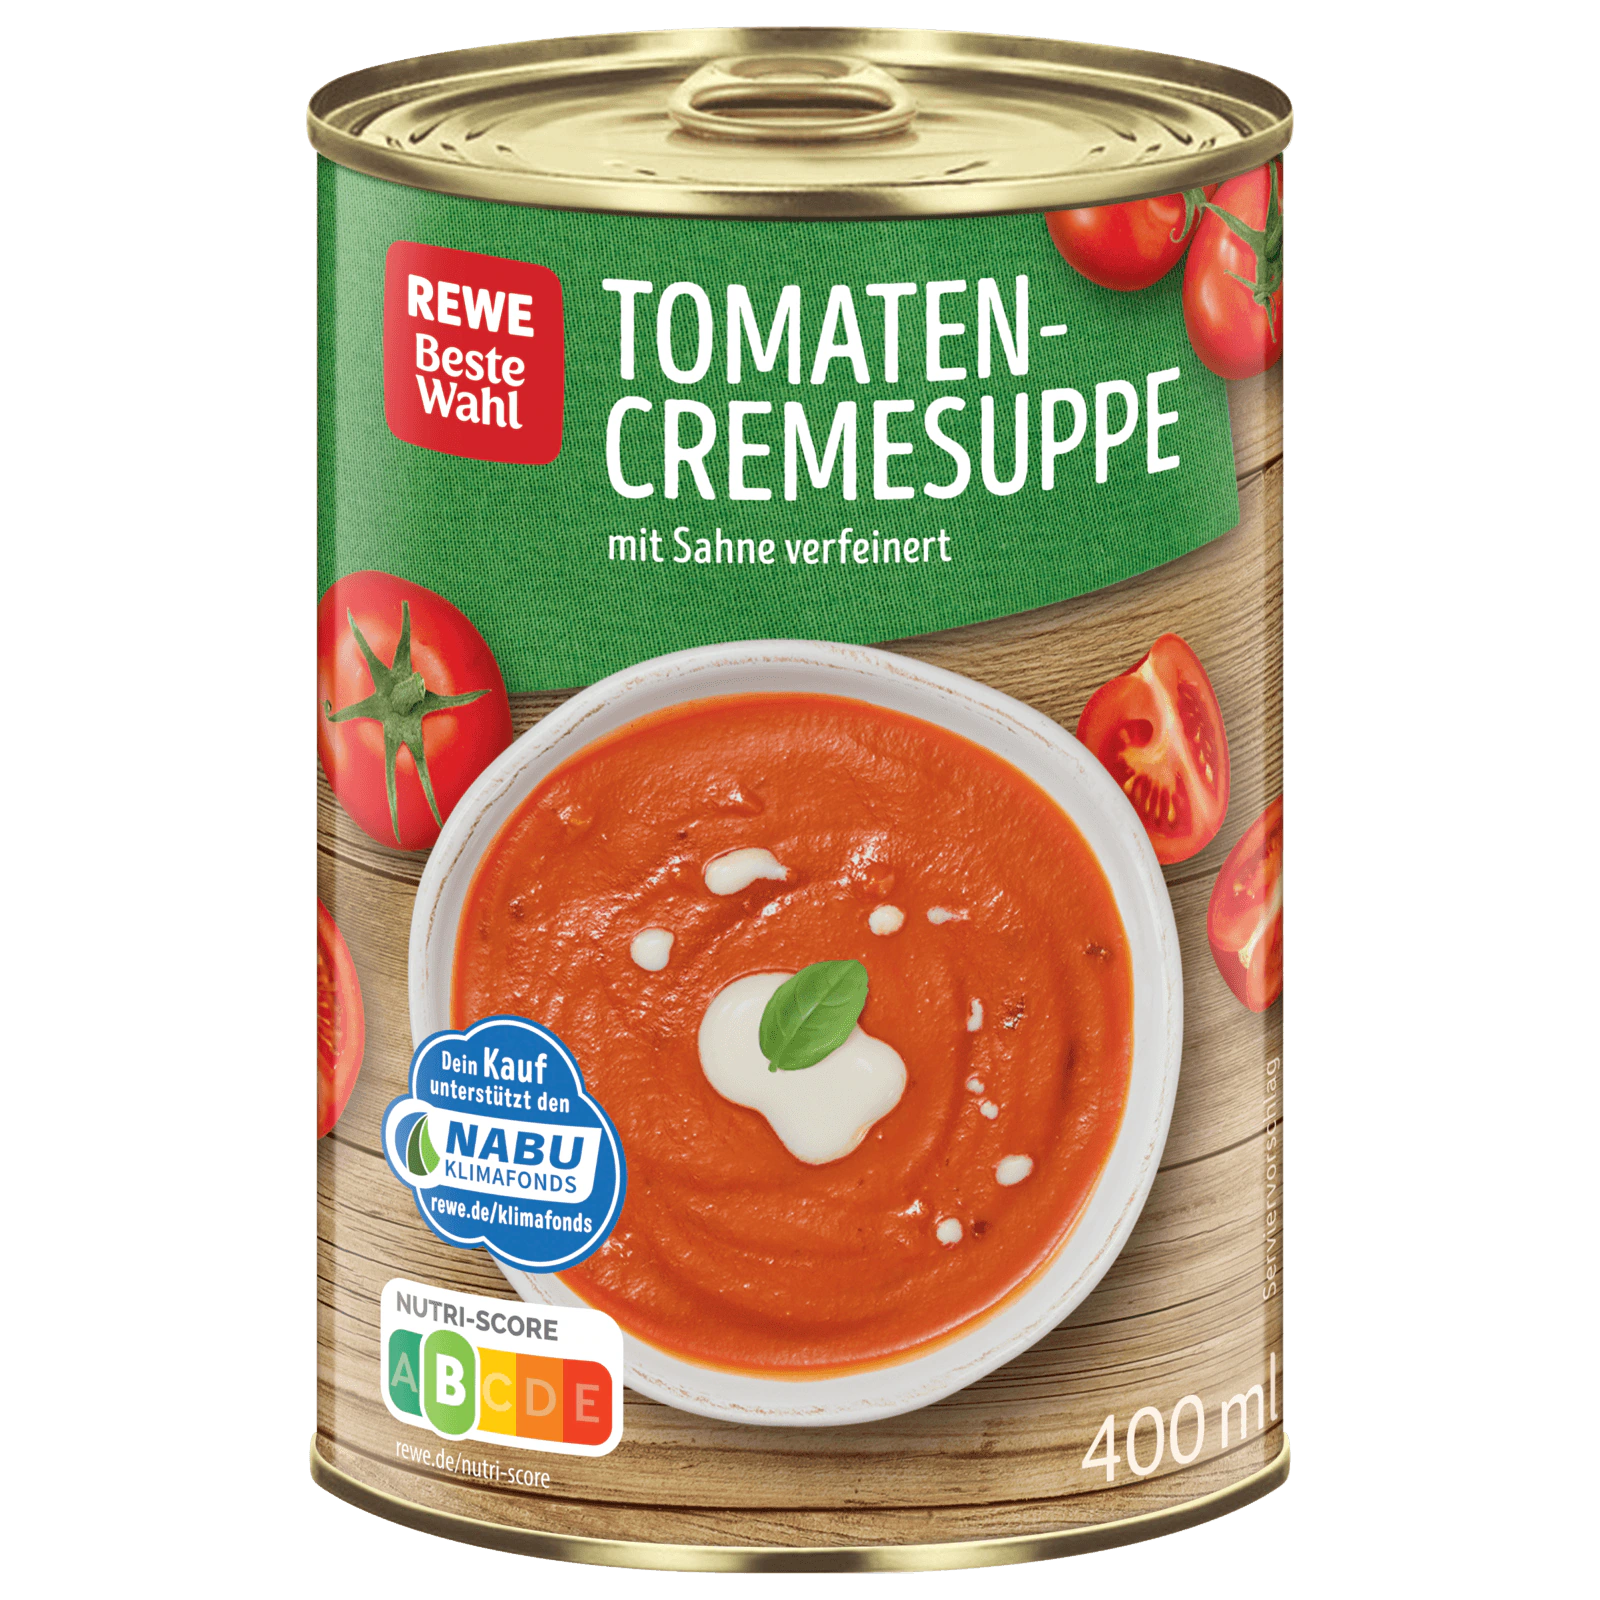 REWE Beste Wahl Tomaten-Cremesuppe 400ml bei REWE online bestellen!